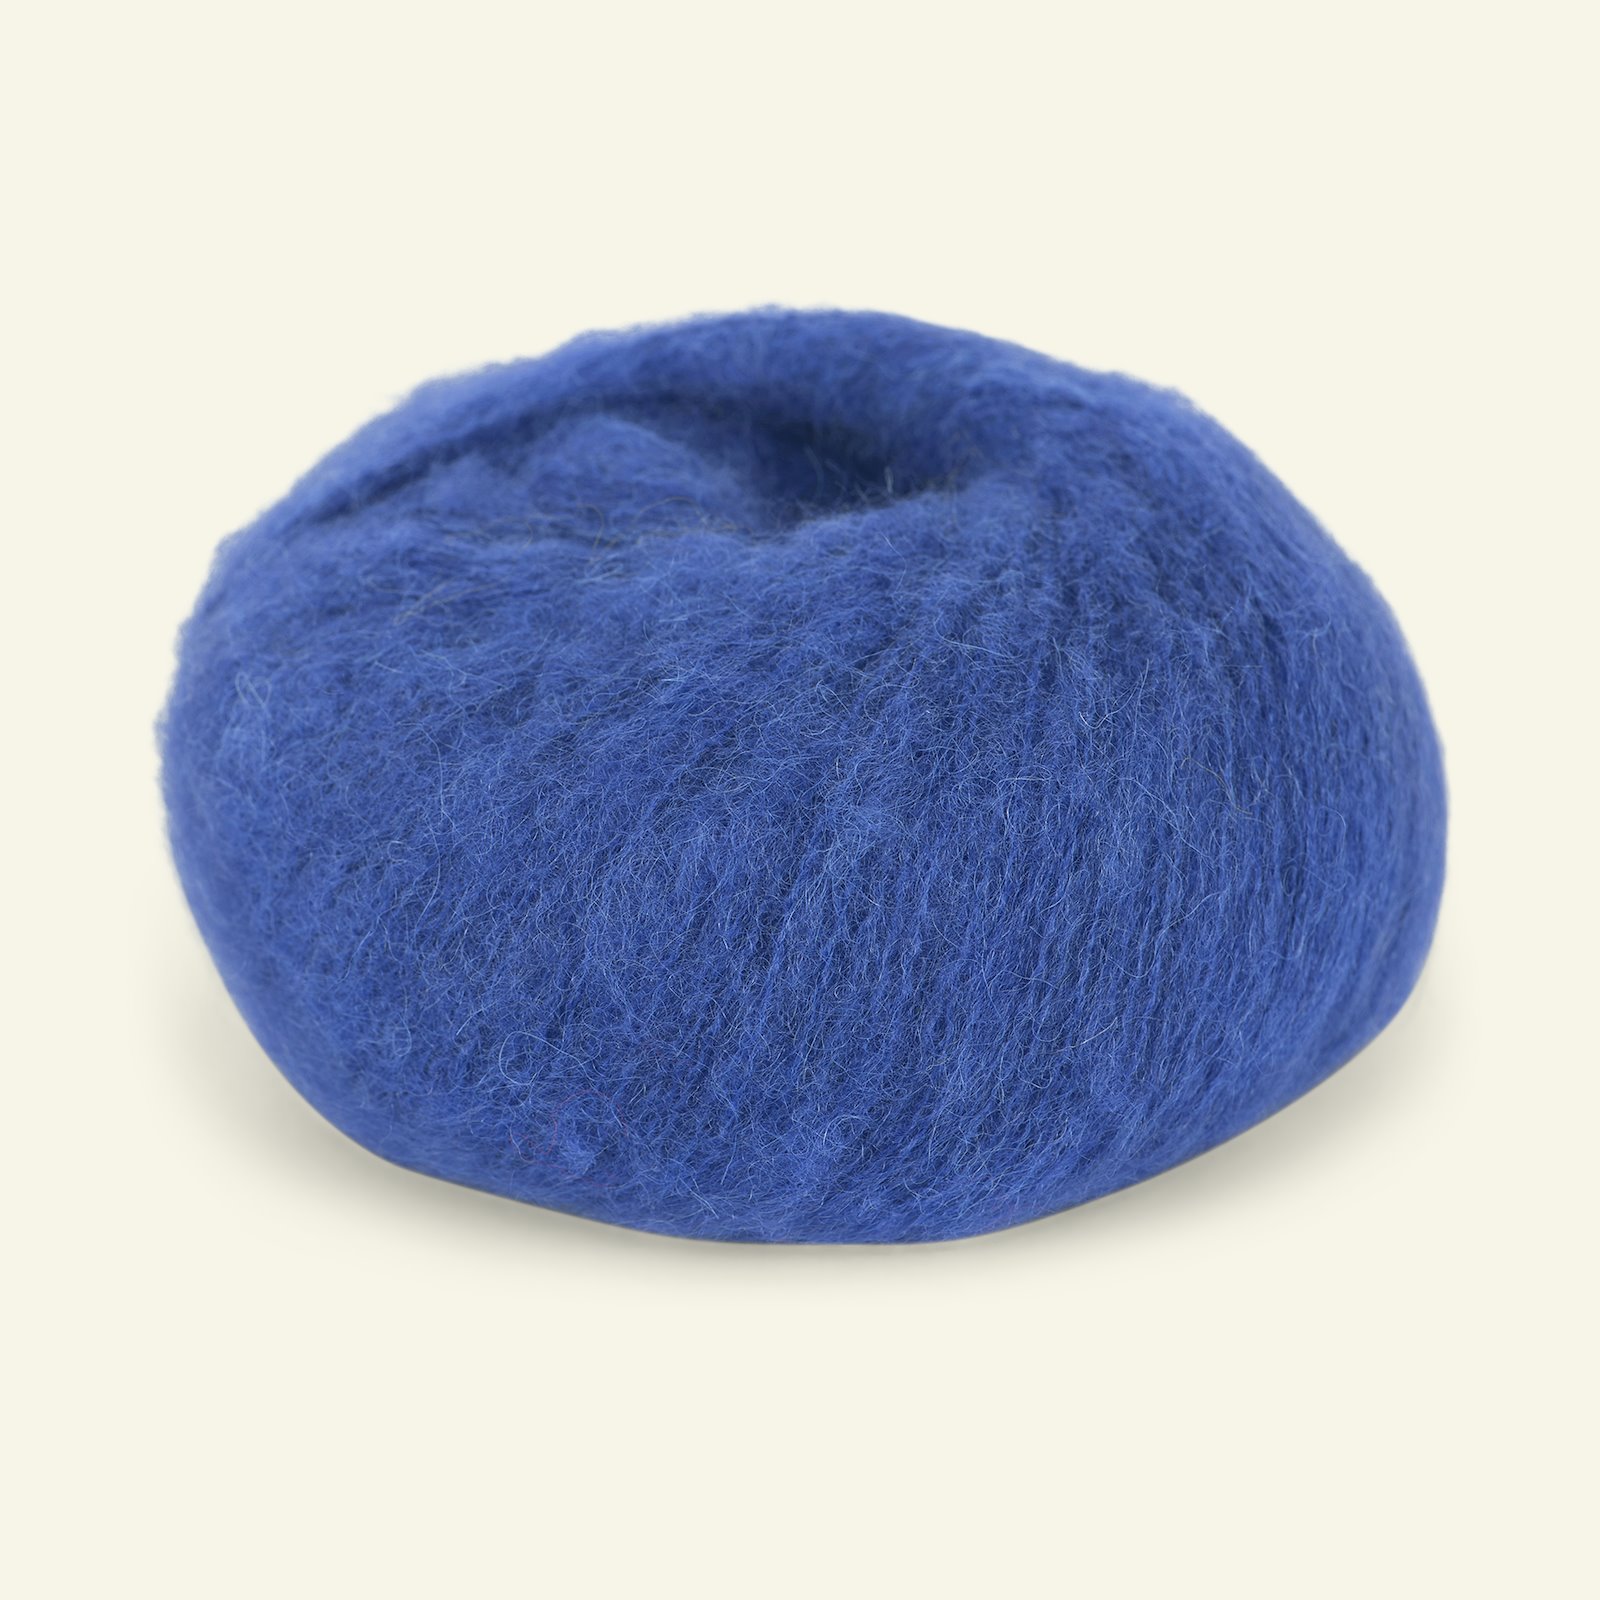 Du Store Alpakka, børsted alpacagarn "Faerytale", cobolt blå (807) 90000614_pack_b